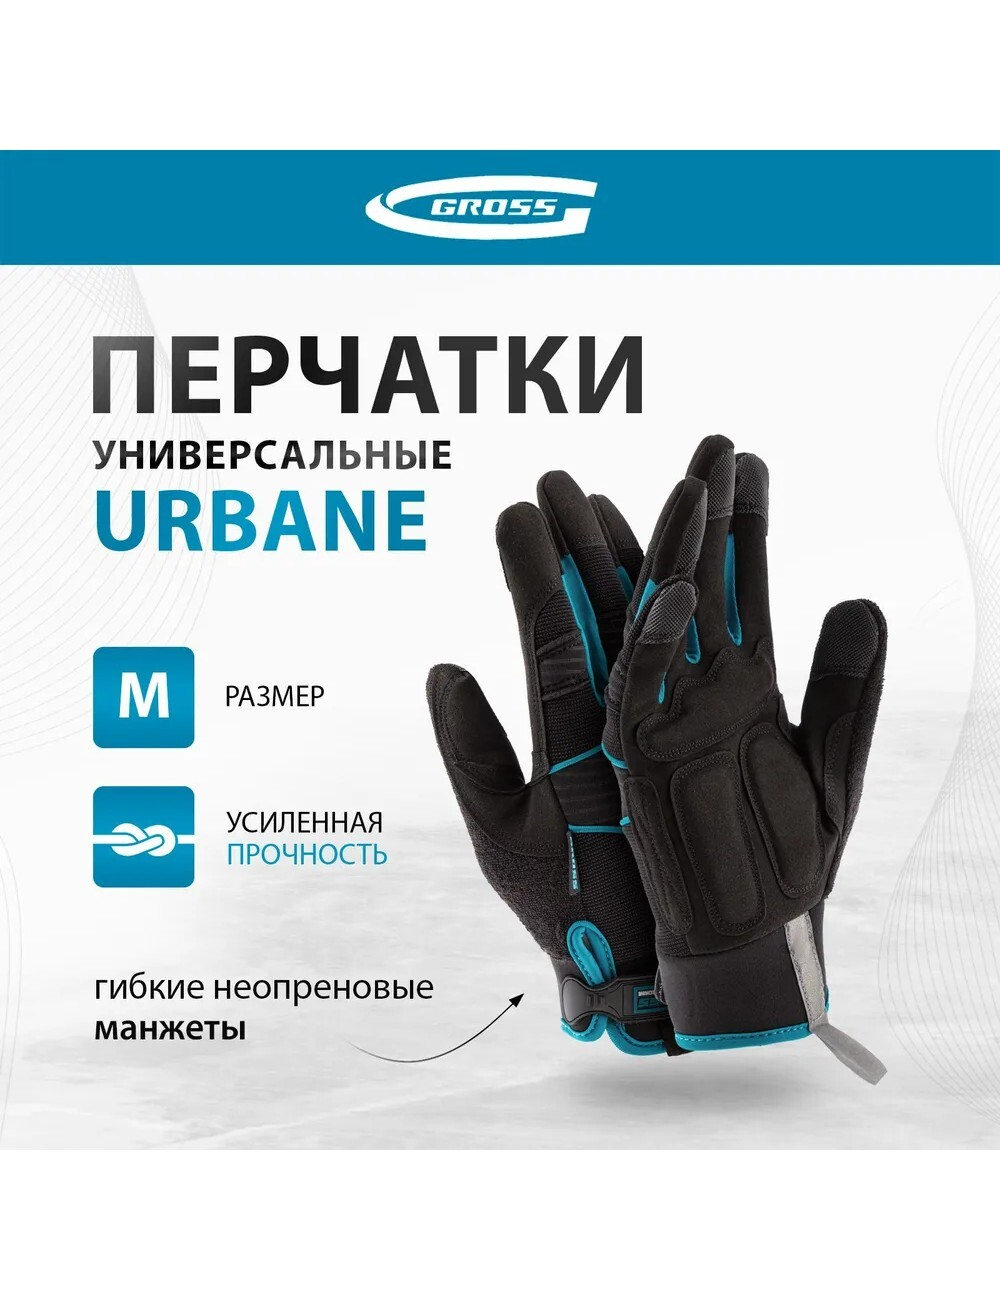 Перчатки Gross URBANE, универсальные, комбинированные, размер M